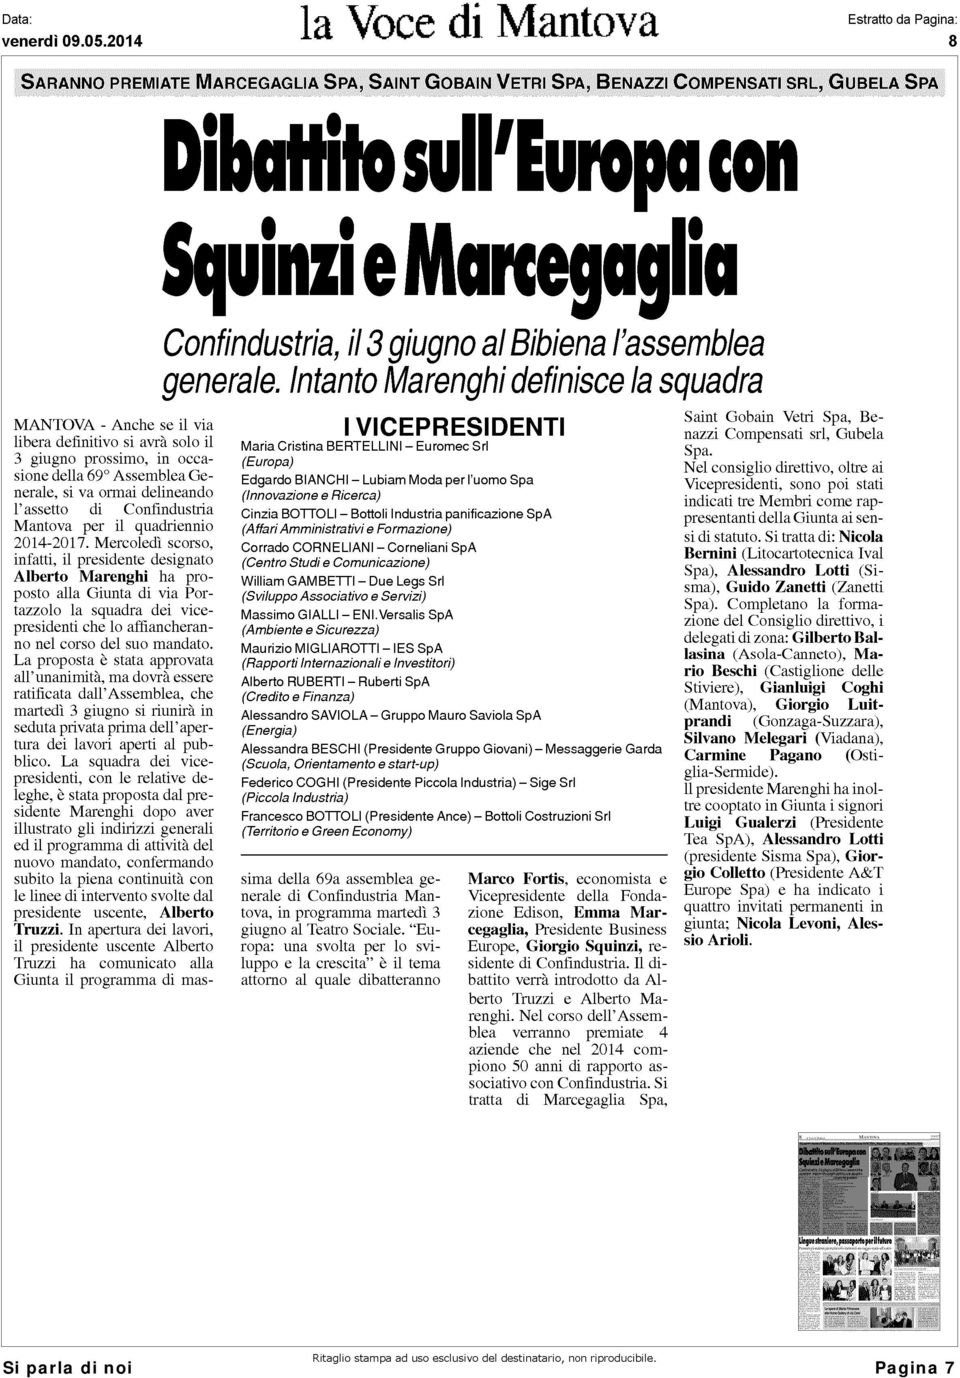 Confindustria Mantova per il quadriennio 2014-2017.